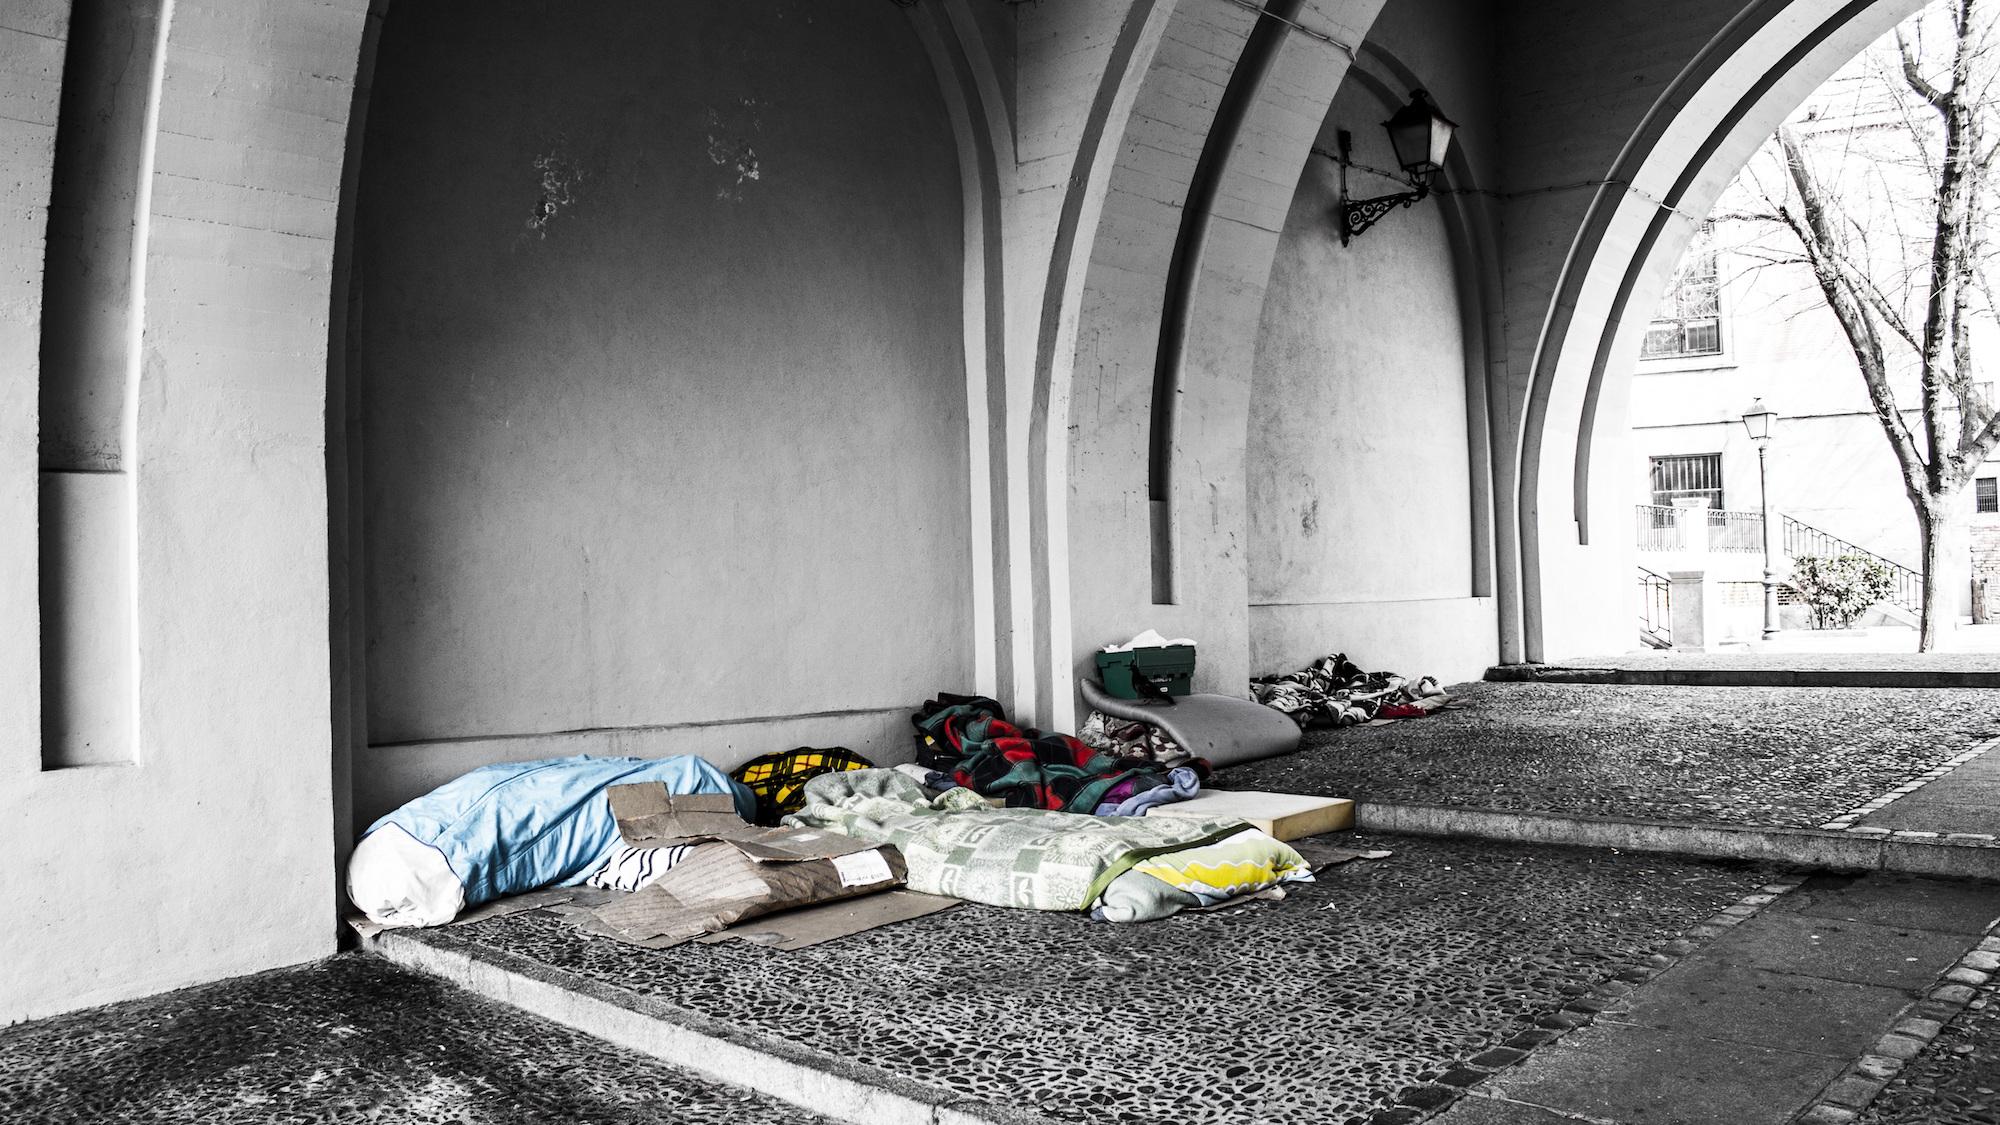 Die Sehnsucht nach einem Zuhause drückt sich auch darin aus, dass Obdachlose ihre Schlafplätze wie Zimmer einrichten. (c) www.pixabay.com